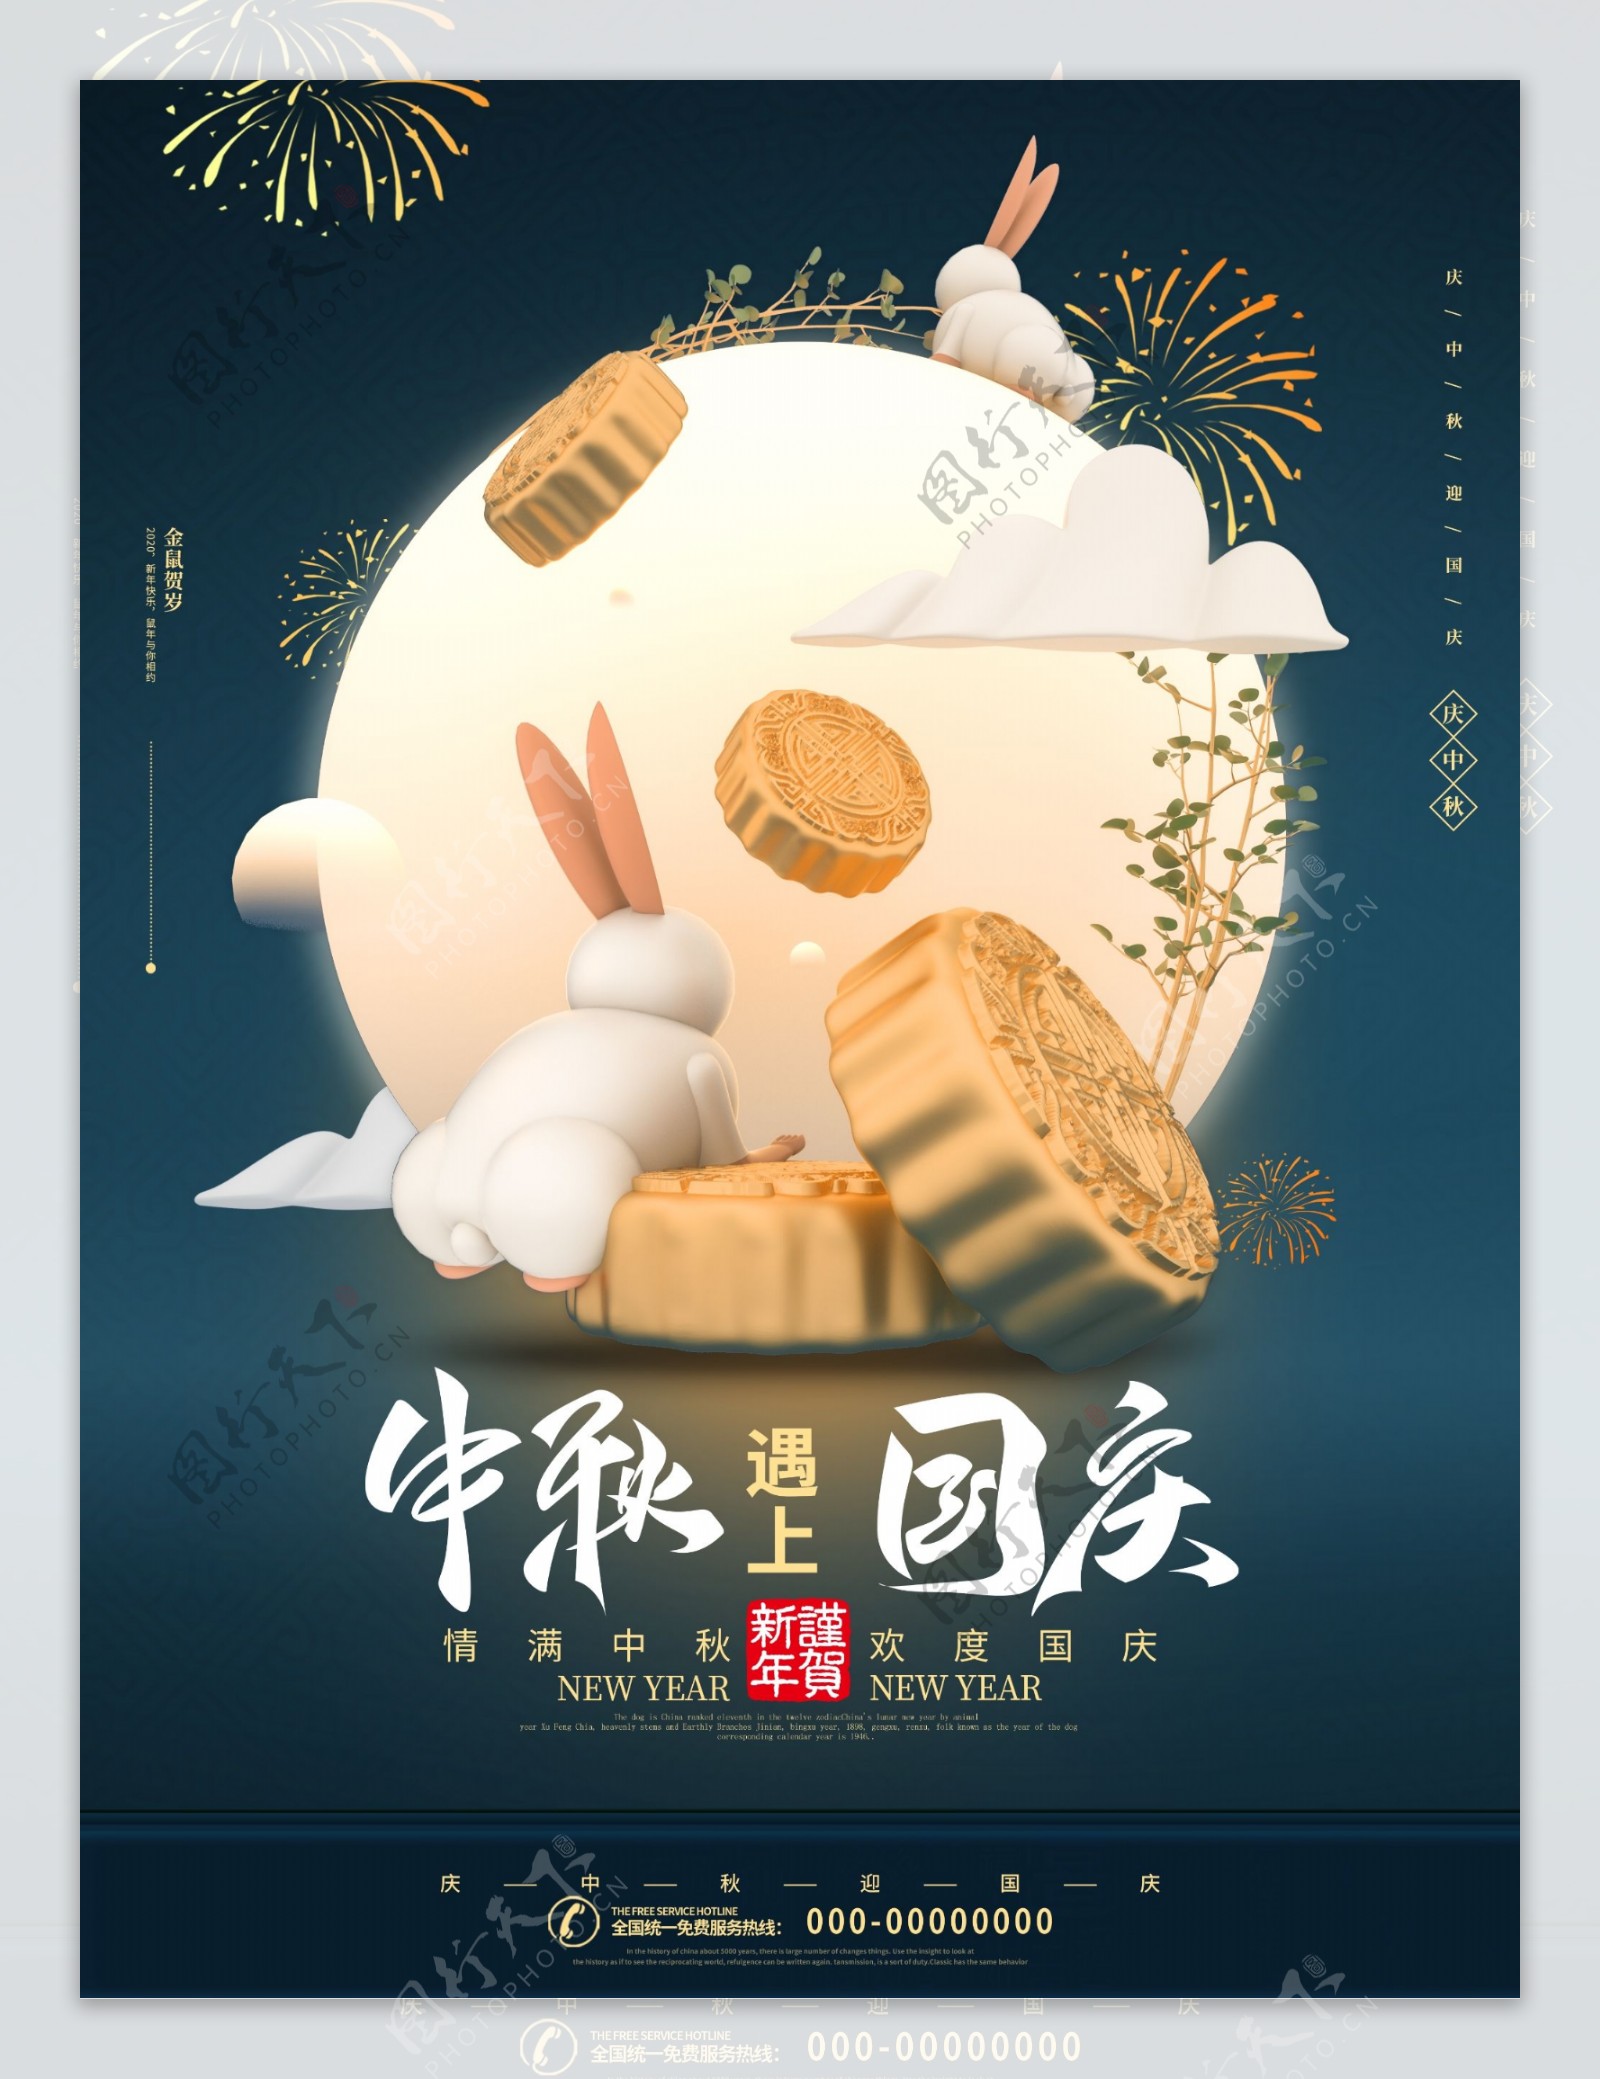 中秋国庆双节同庆节日海报图片